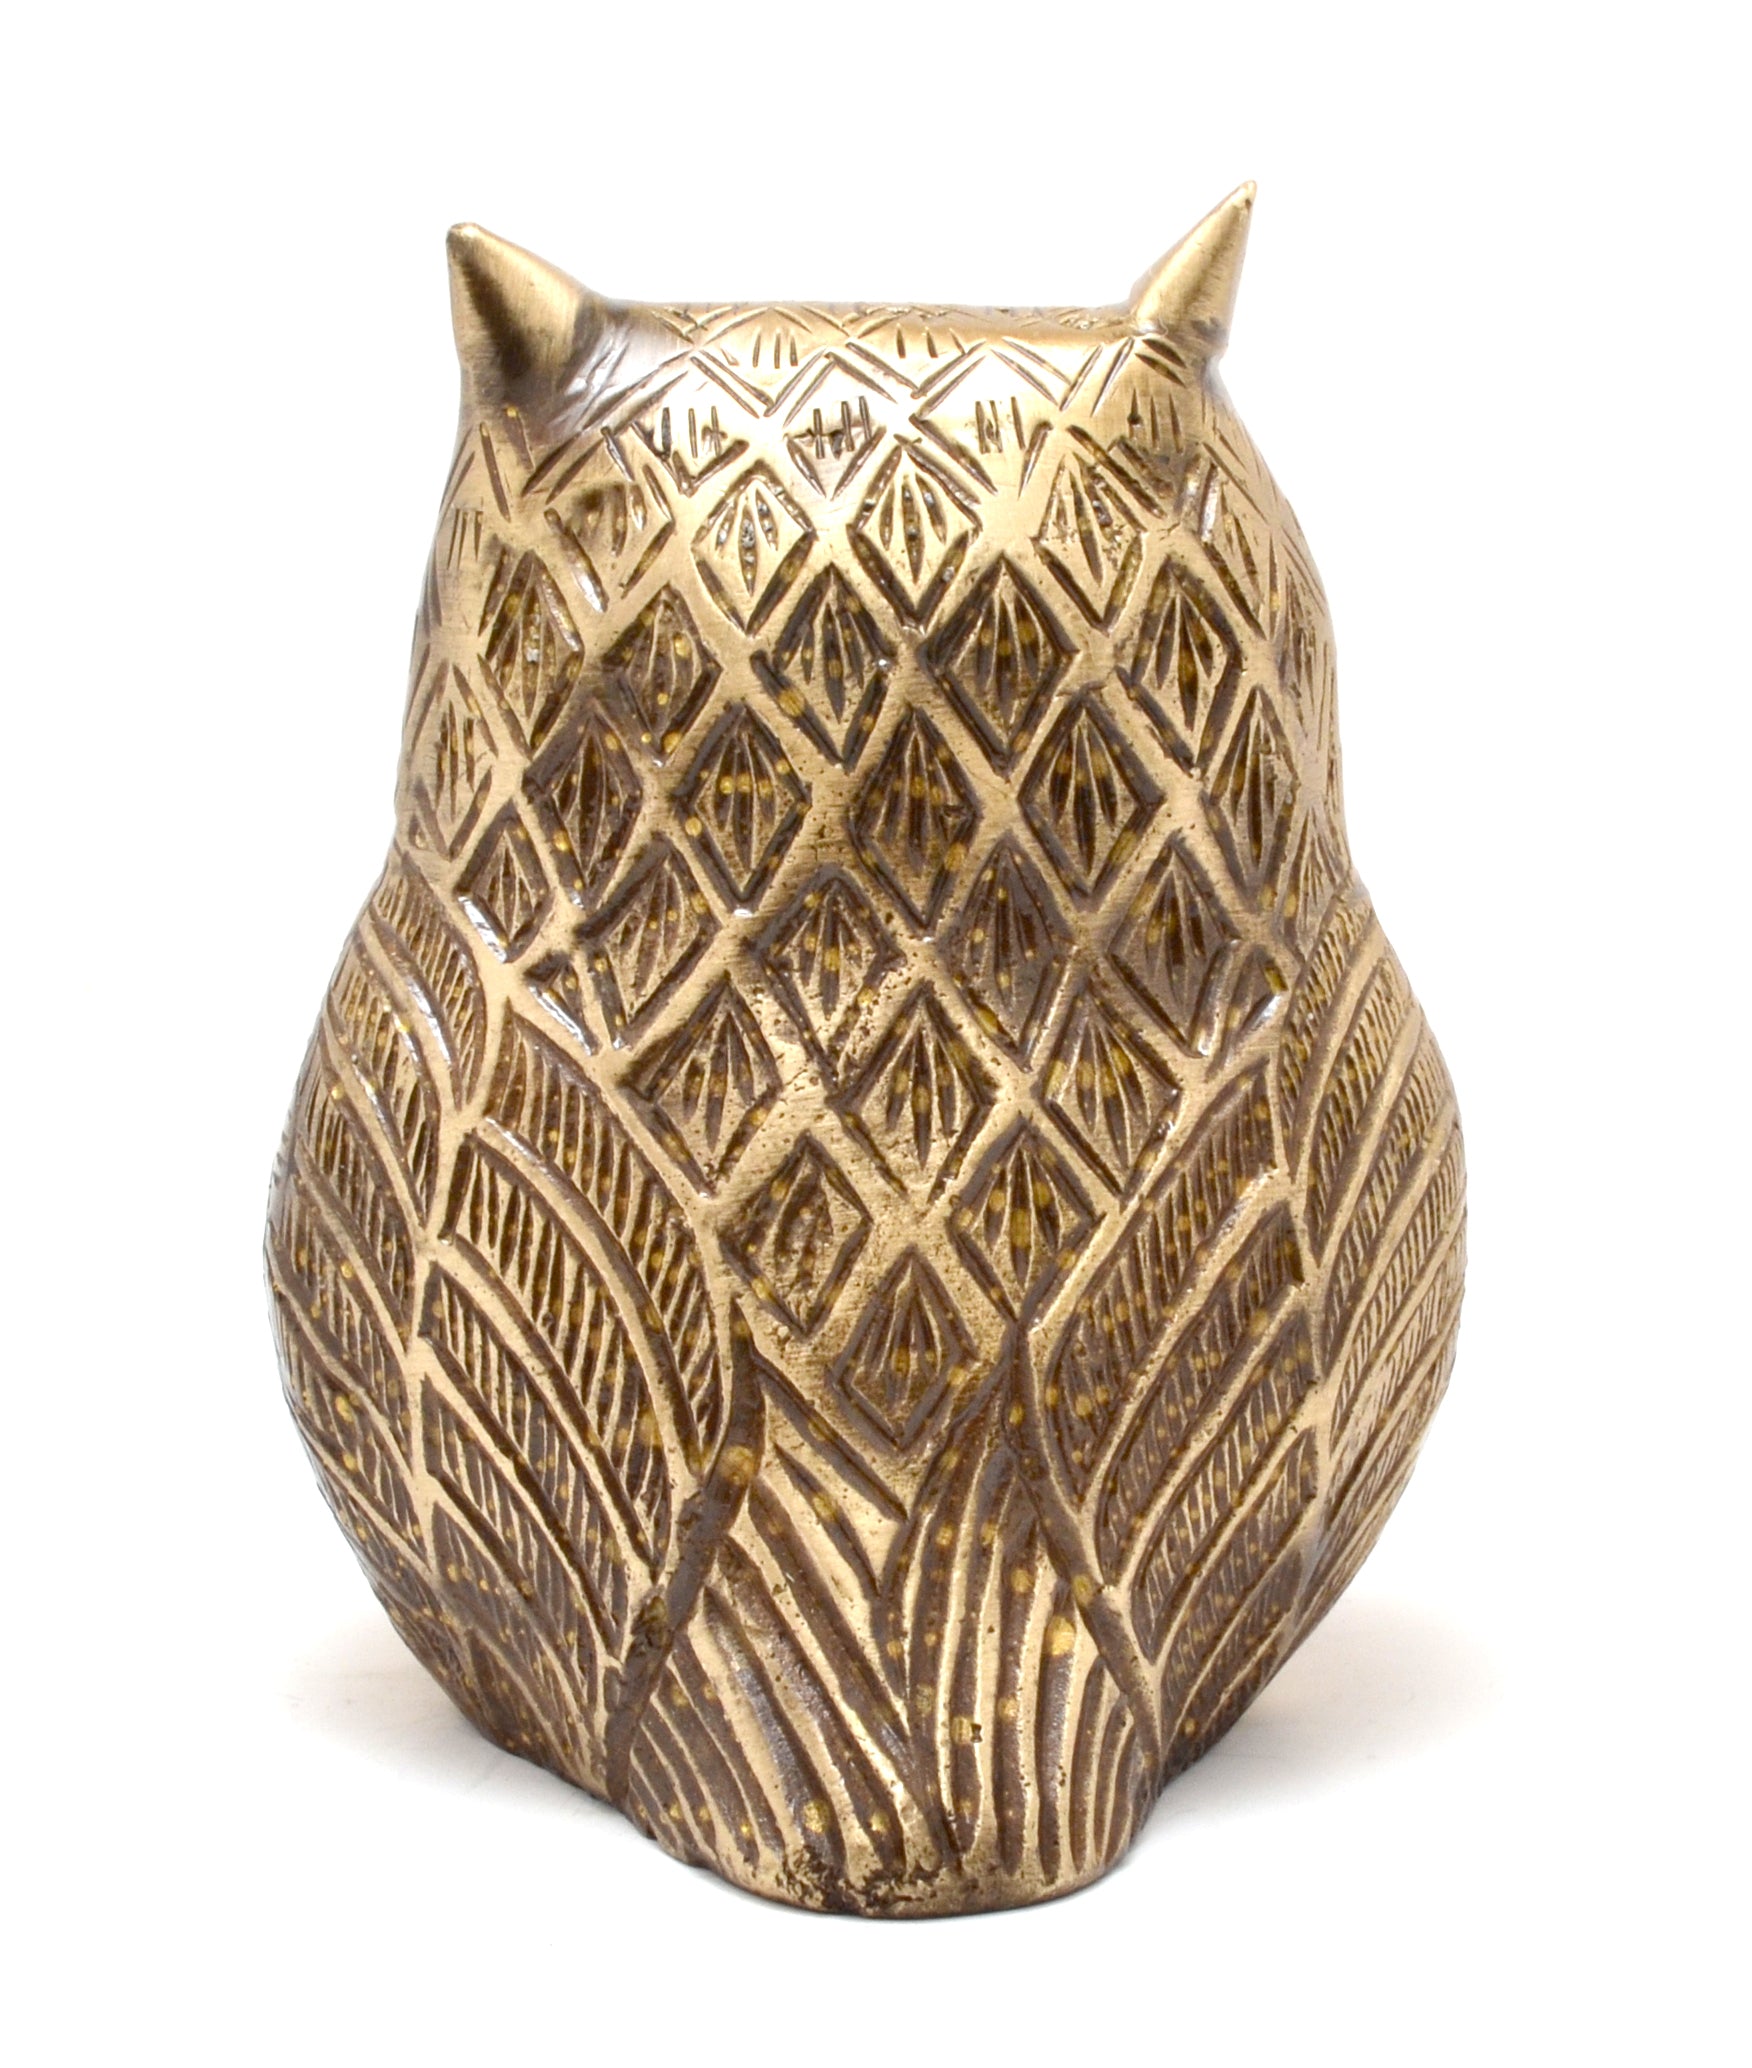 Vintage Brass Owl Decor Showpiece